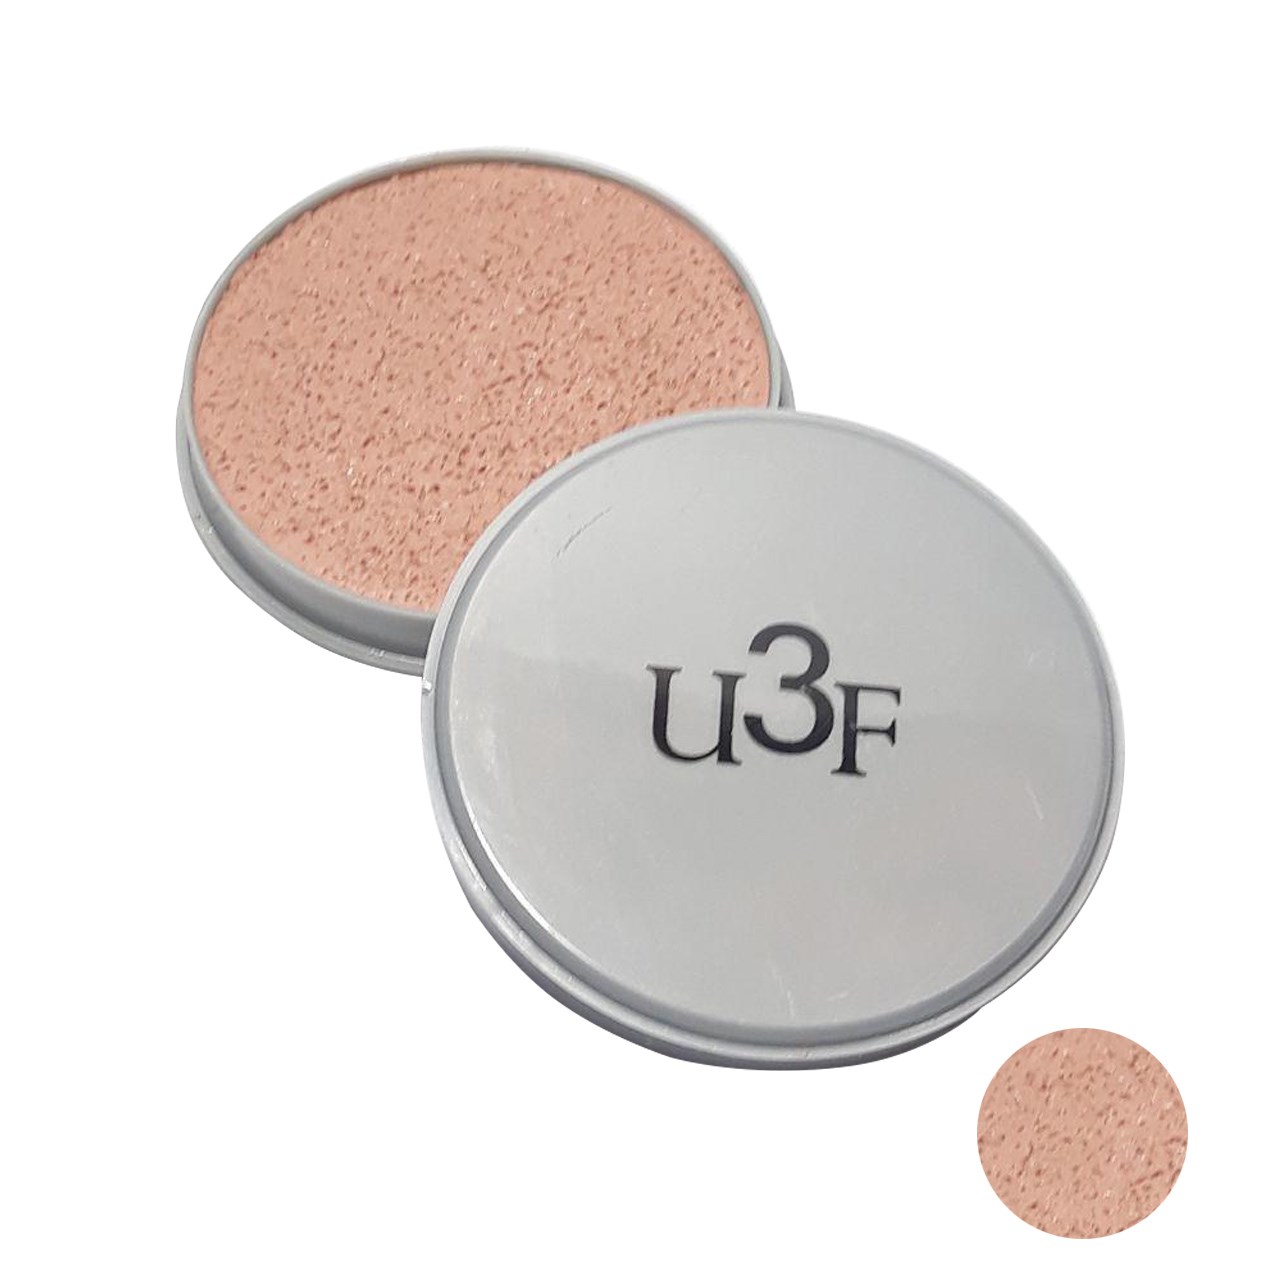 پنکیک سنگی U3F مدل professional make up شماره 45 مقدار 60 گرم